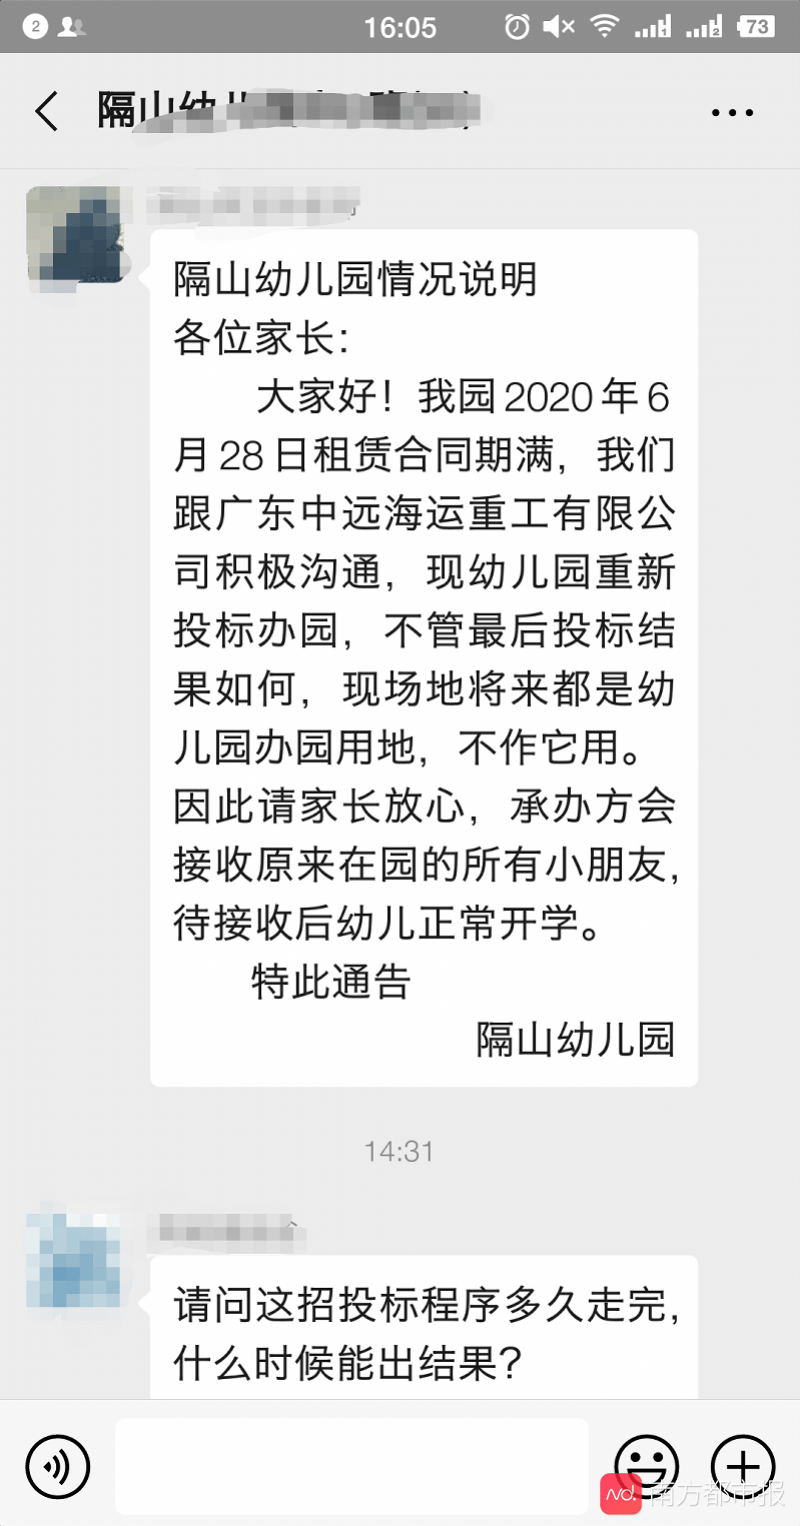 广州海珠一幼儿园突然公告停办，家长懵圈！记者帮紧急核实